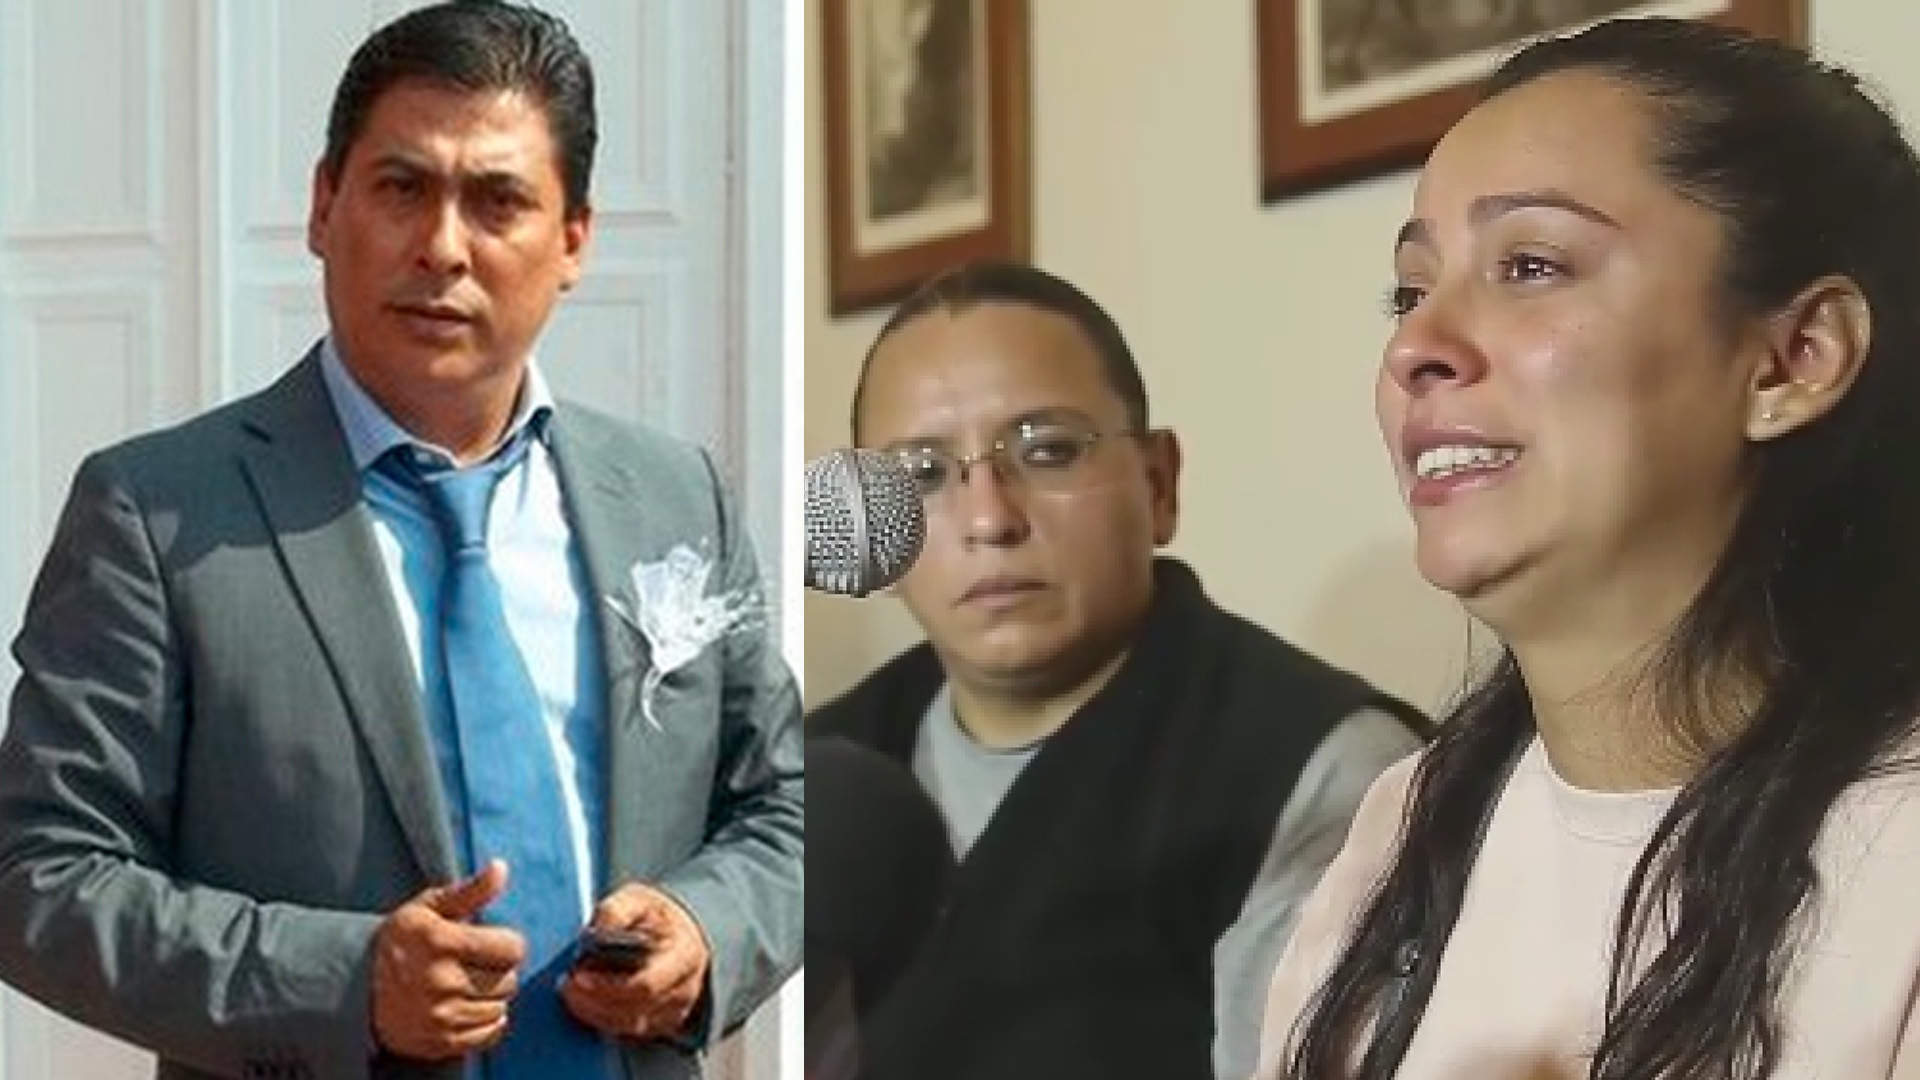 Indignación y dolor: la familia de Salvador Adame desconfía de la versión oficial